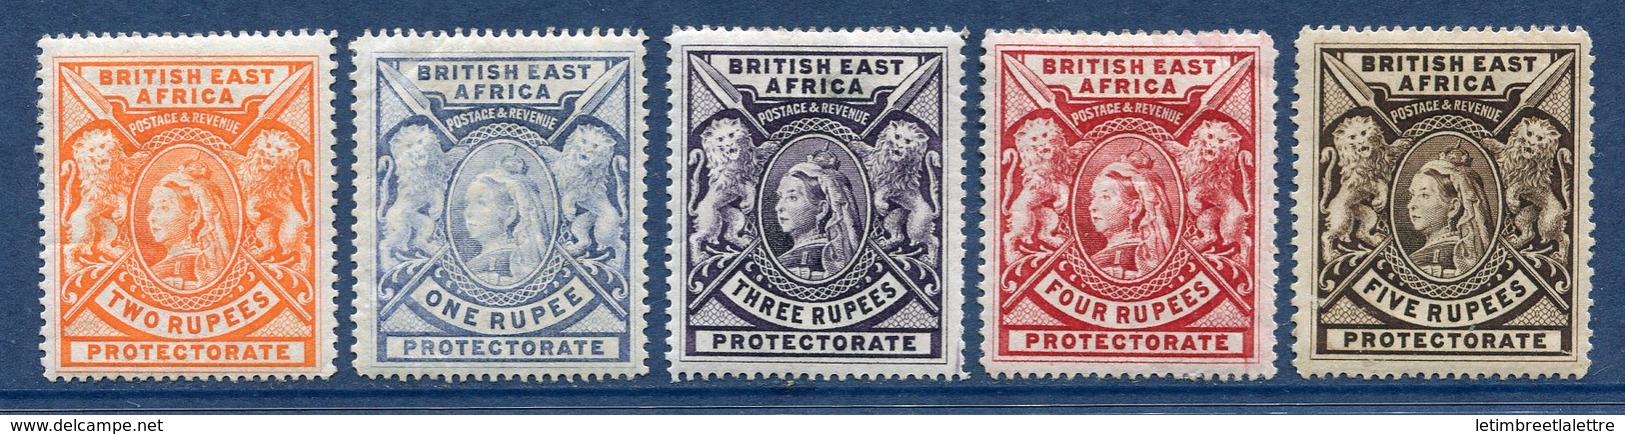 ⭐ Afrique Orientale Britannique - YT N° 76 à 80 * - Neuf Avec Charnière ⭐ - Afrique Orientale Britannique